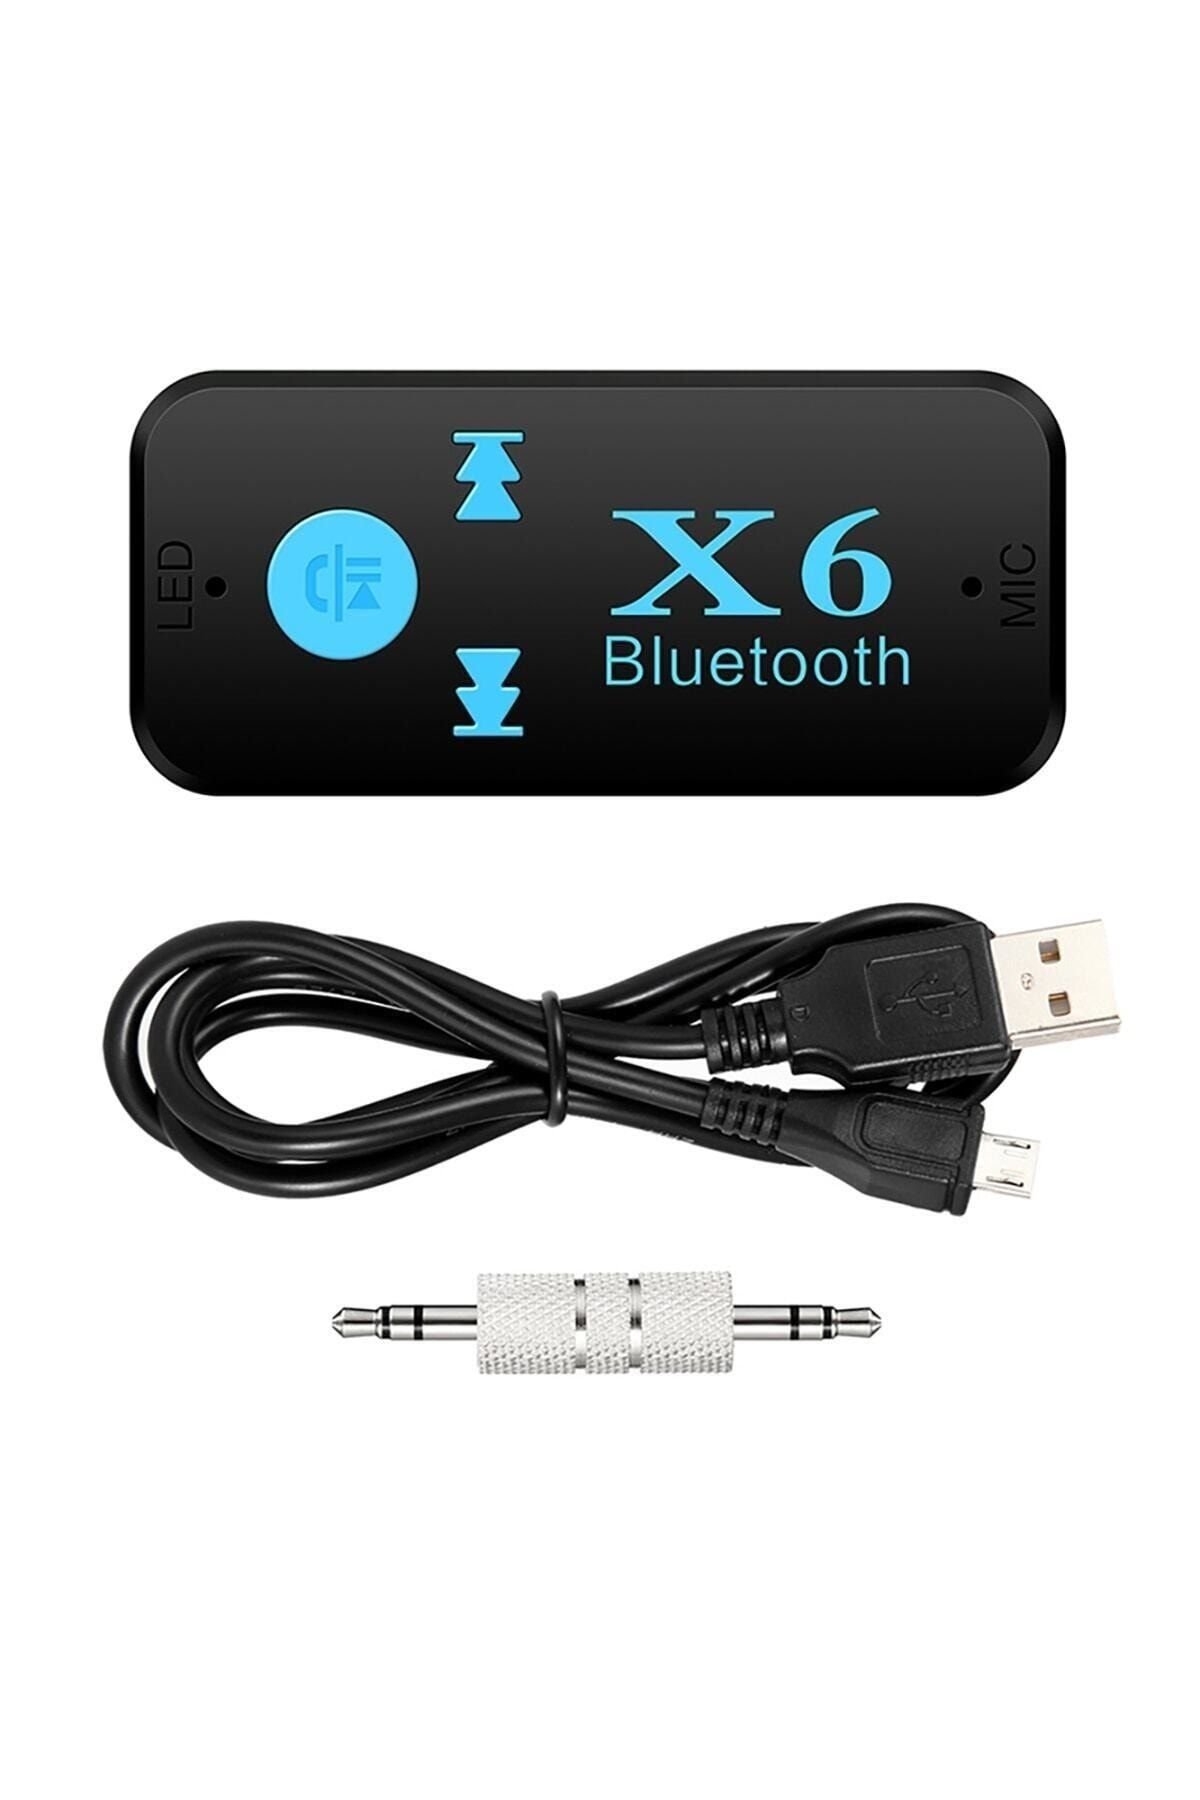 Blueway X6 Bluetooth Müzik Alıcısı 3.5mm Aux Adaptör Araç Kiti 3 In 1